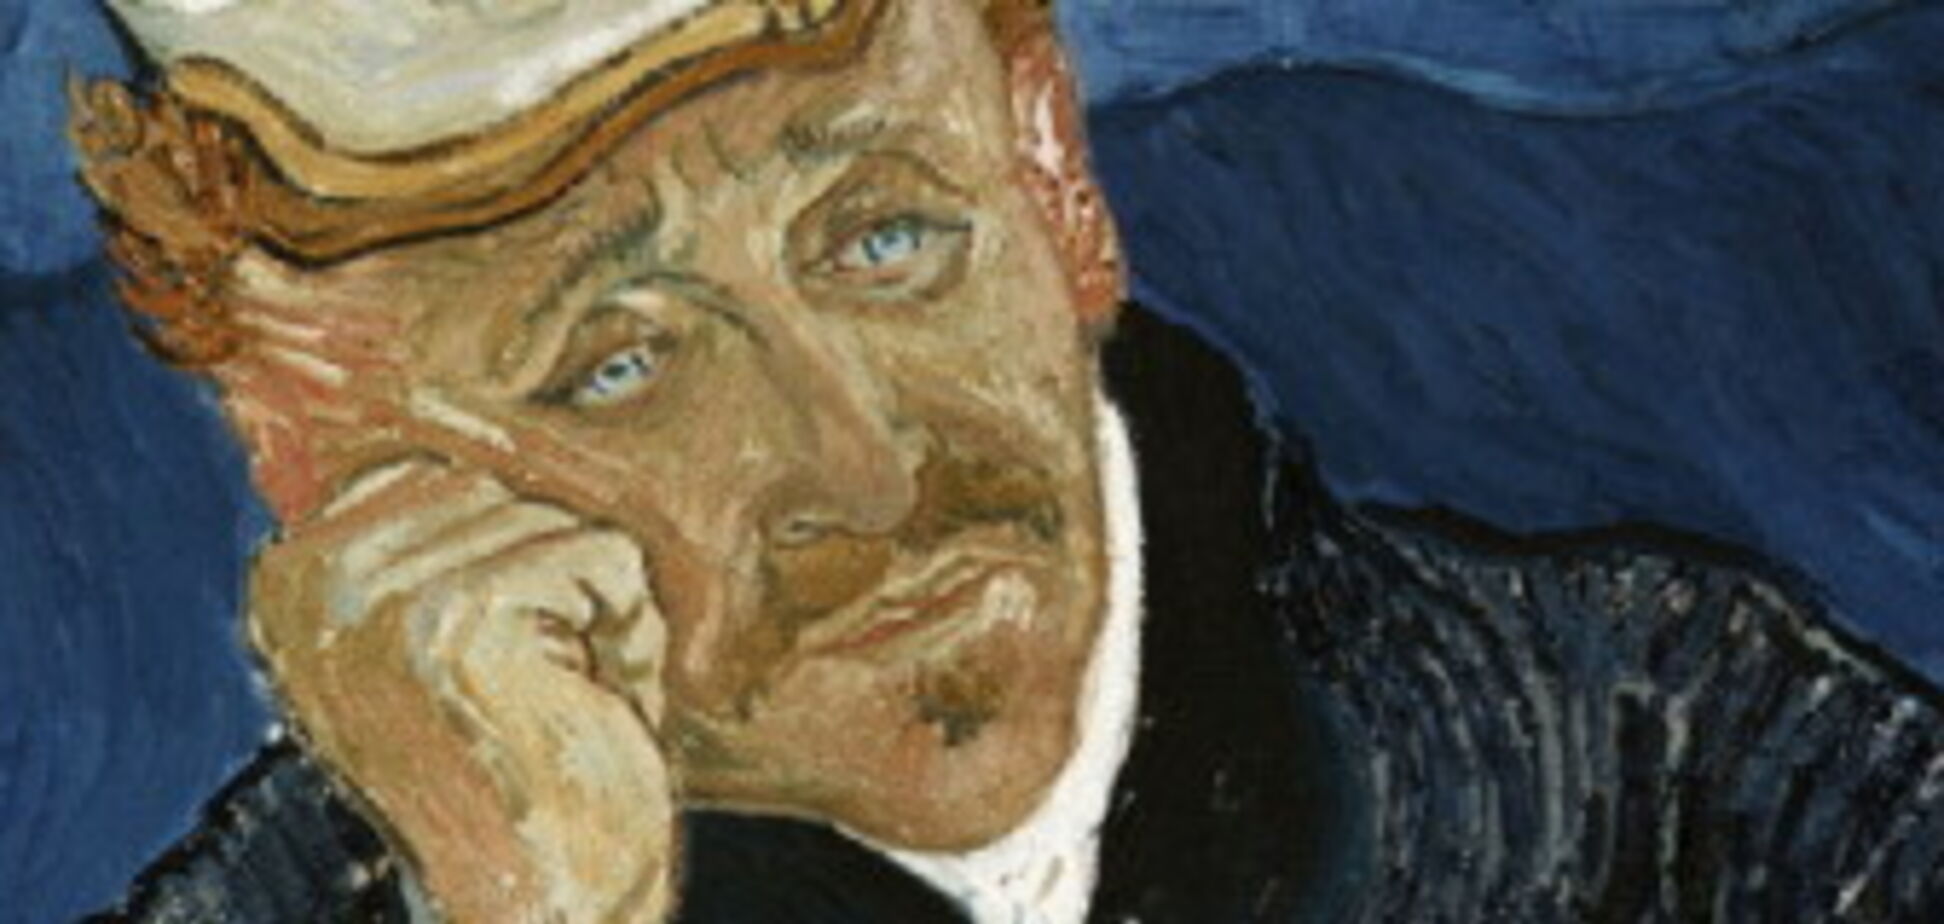 Сенсаційна знахідка останньої картини Ван Гога